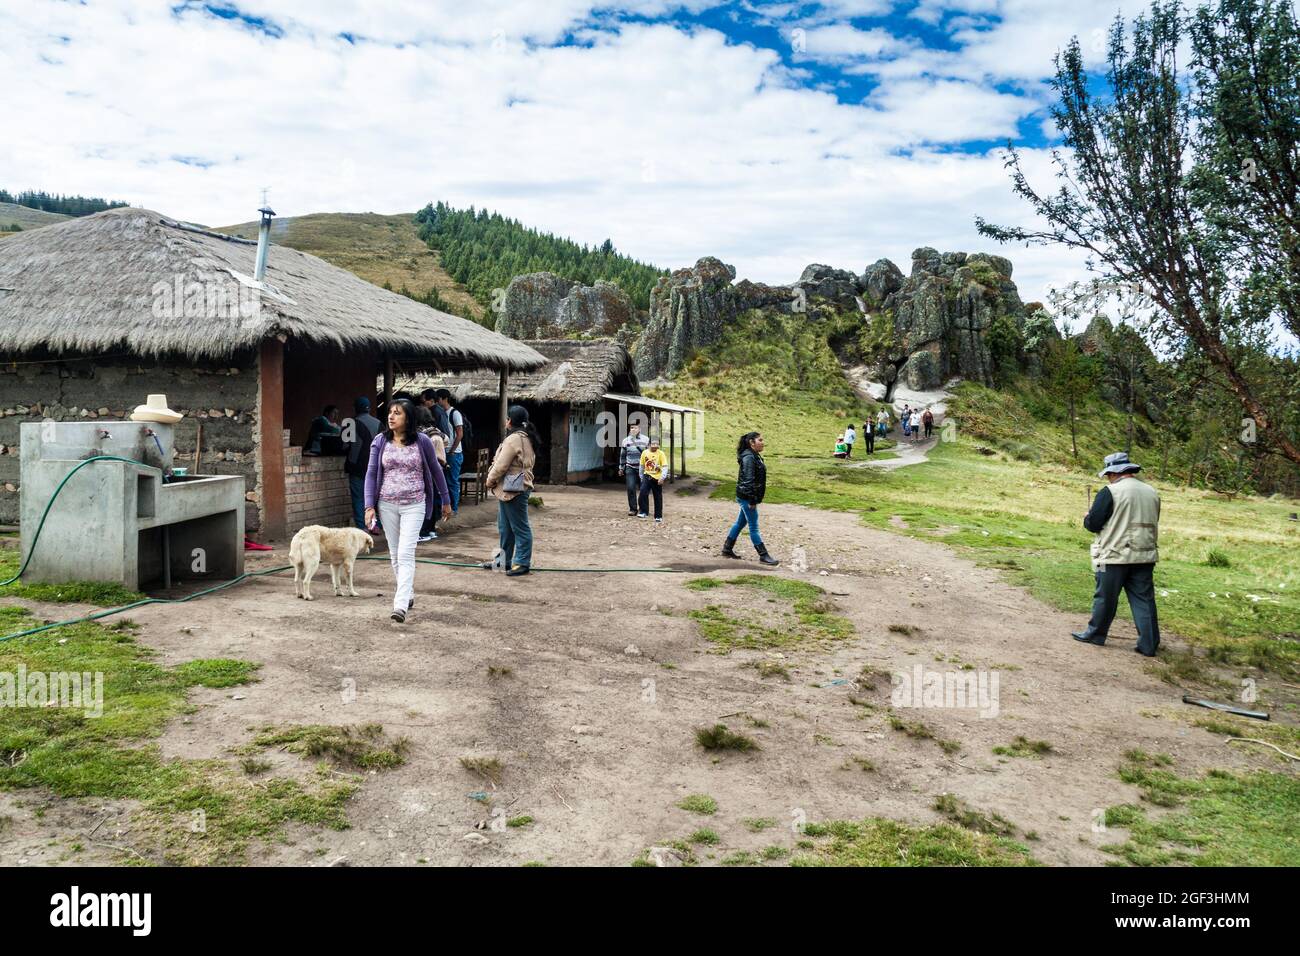 CAJAMARCA, PERÙ - 8 GIUGNO 2015: I turisti visitano un piccolo insediamento rurale vicino a Los Frailones (Monaci di pietra), formazioni rocciose vicino a Cajamarca, Perù. Foto Stock